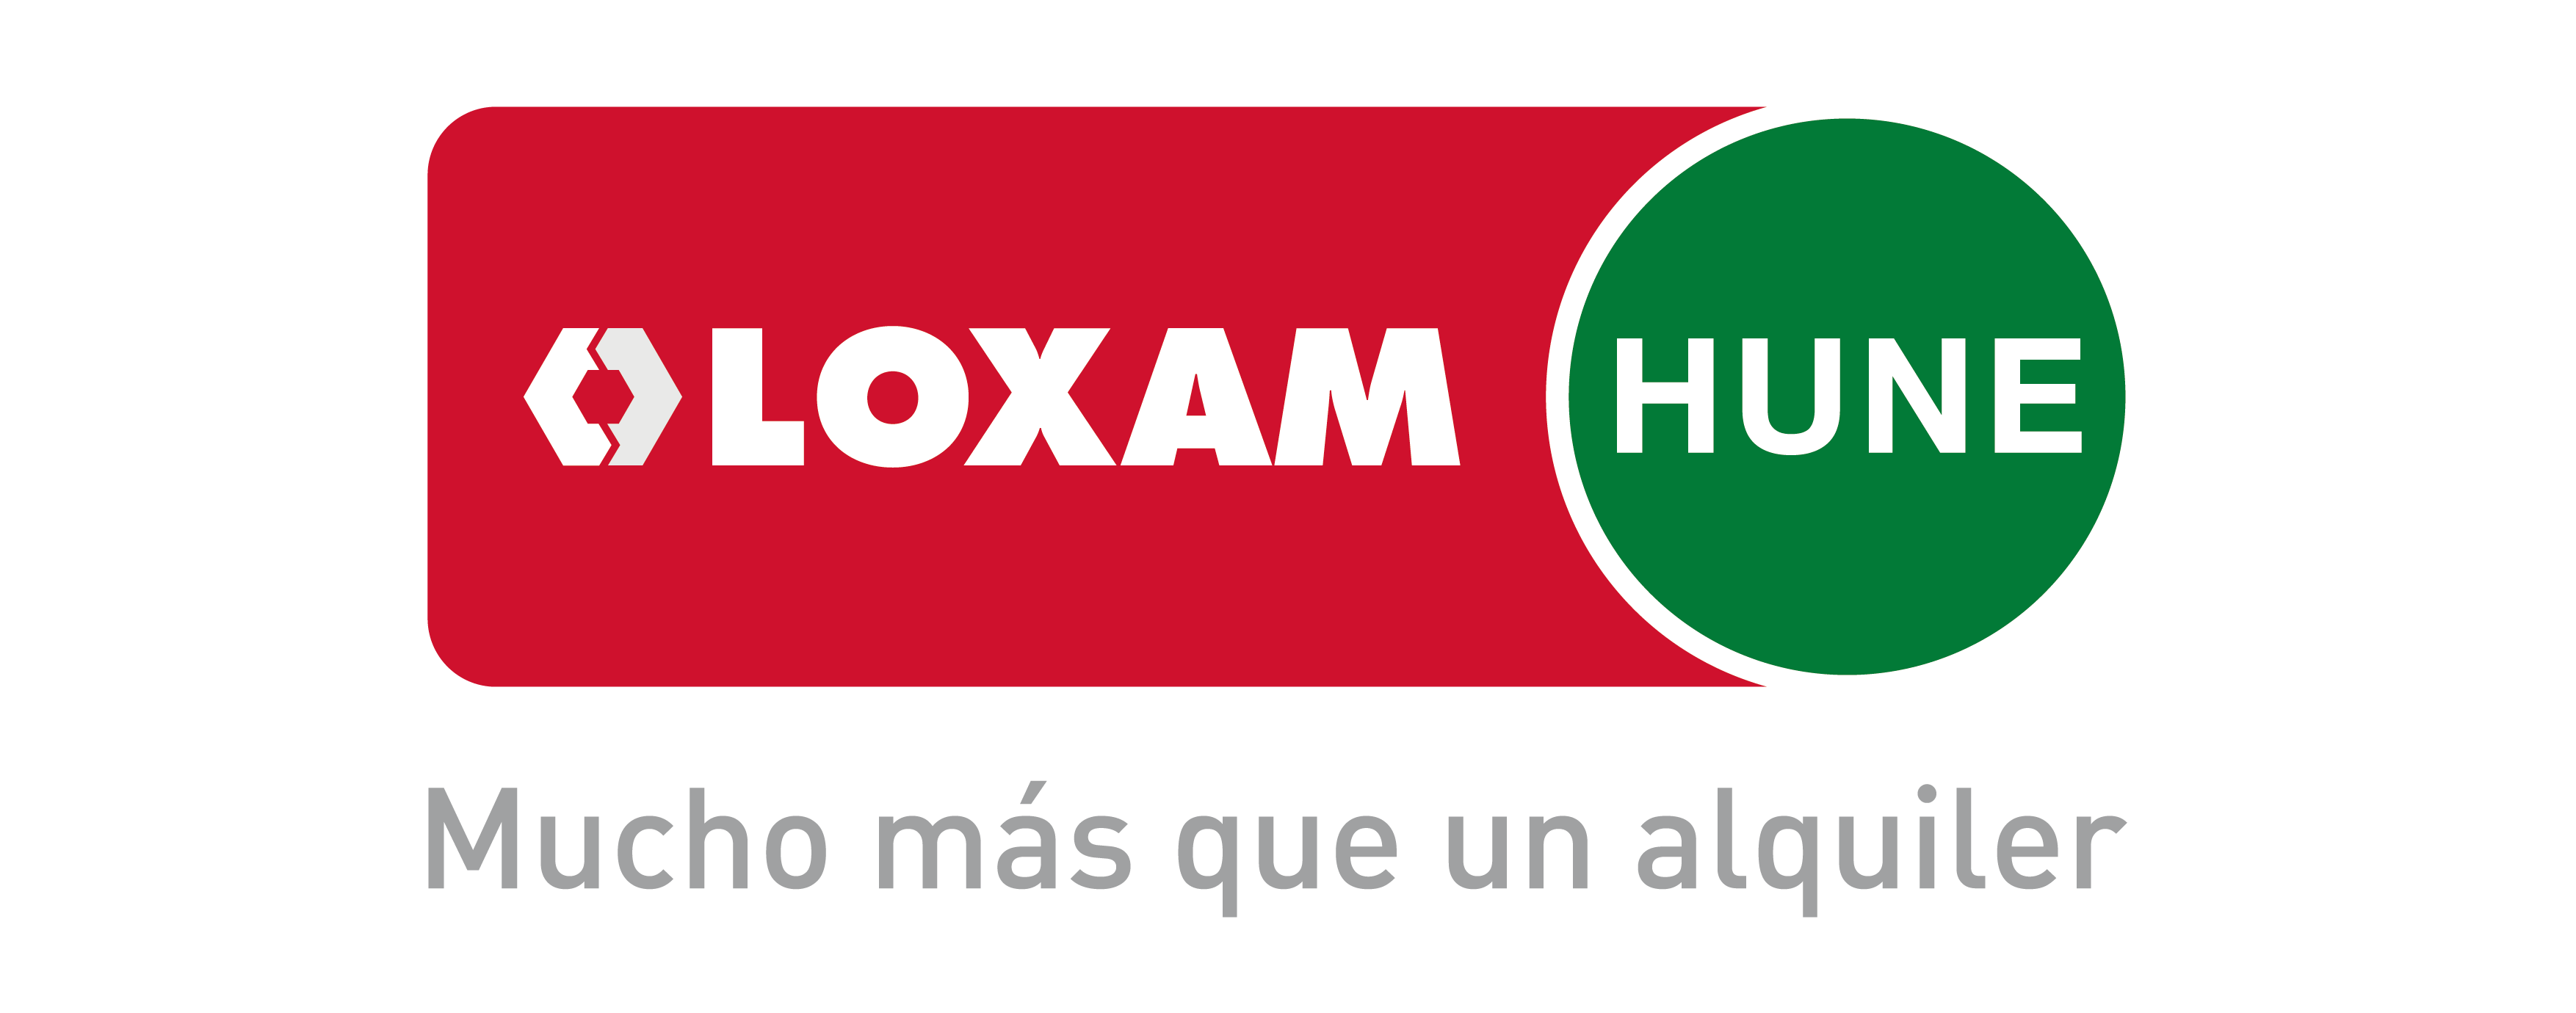 LoxamHune traslada su delegación en Salamanca para dar servicio a más de 600 clientes, 60% locales.